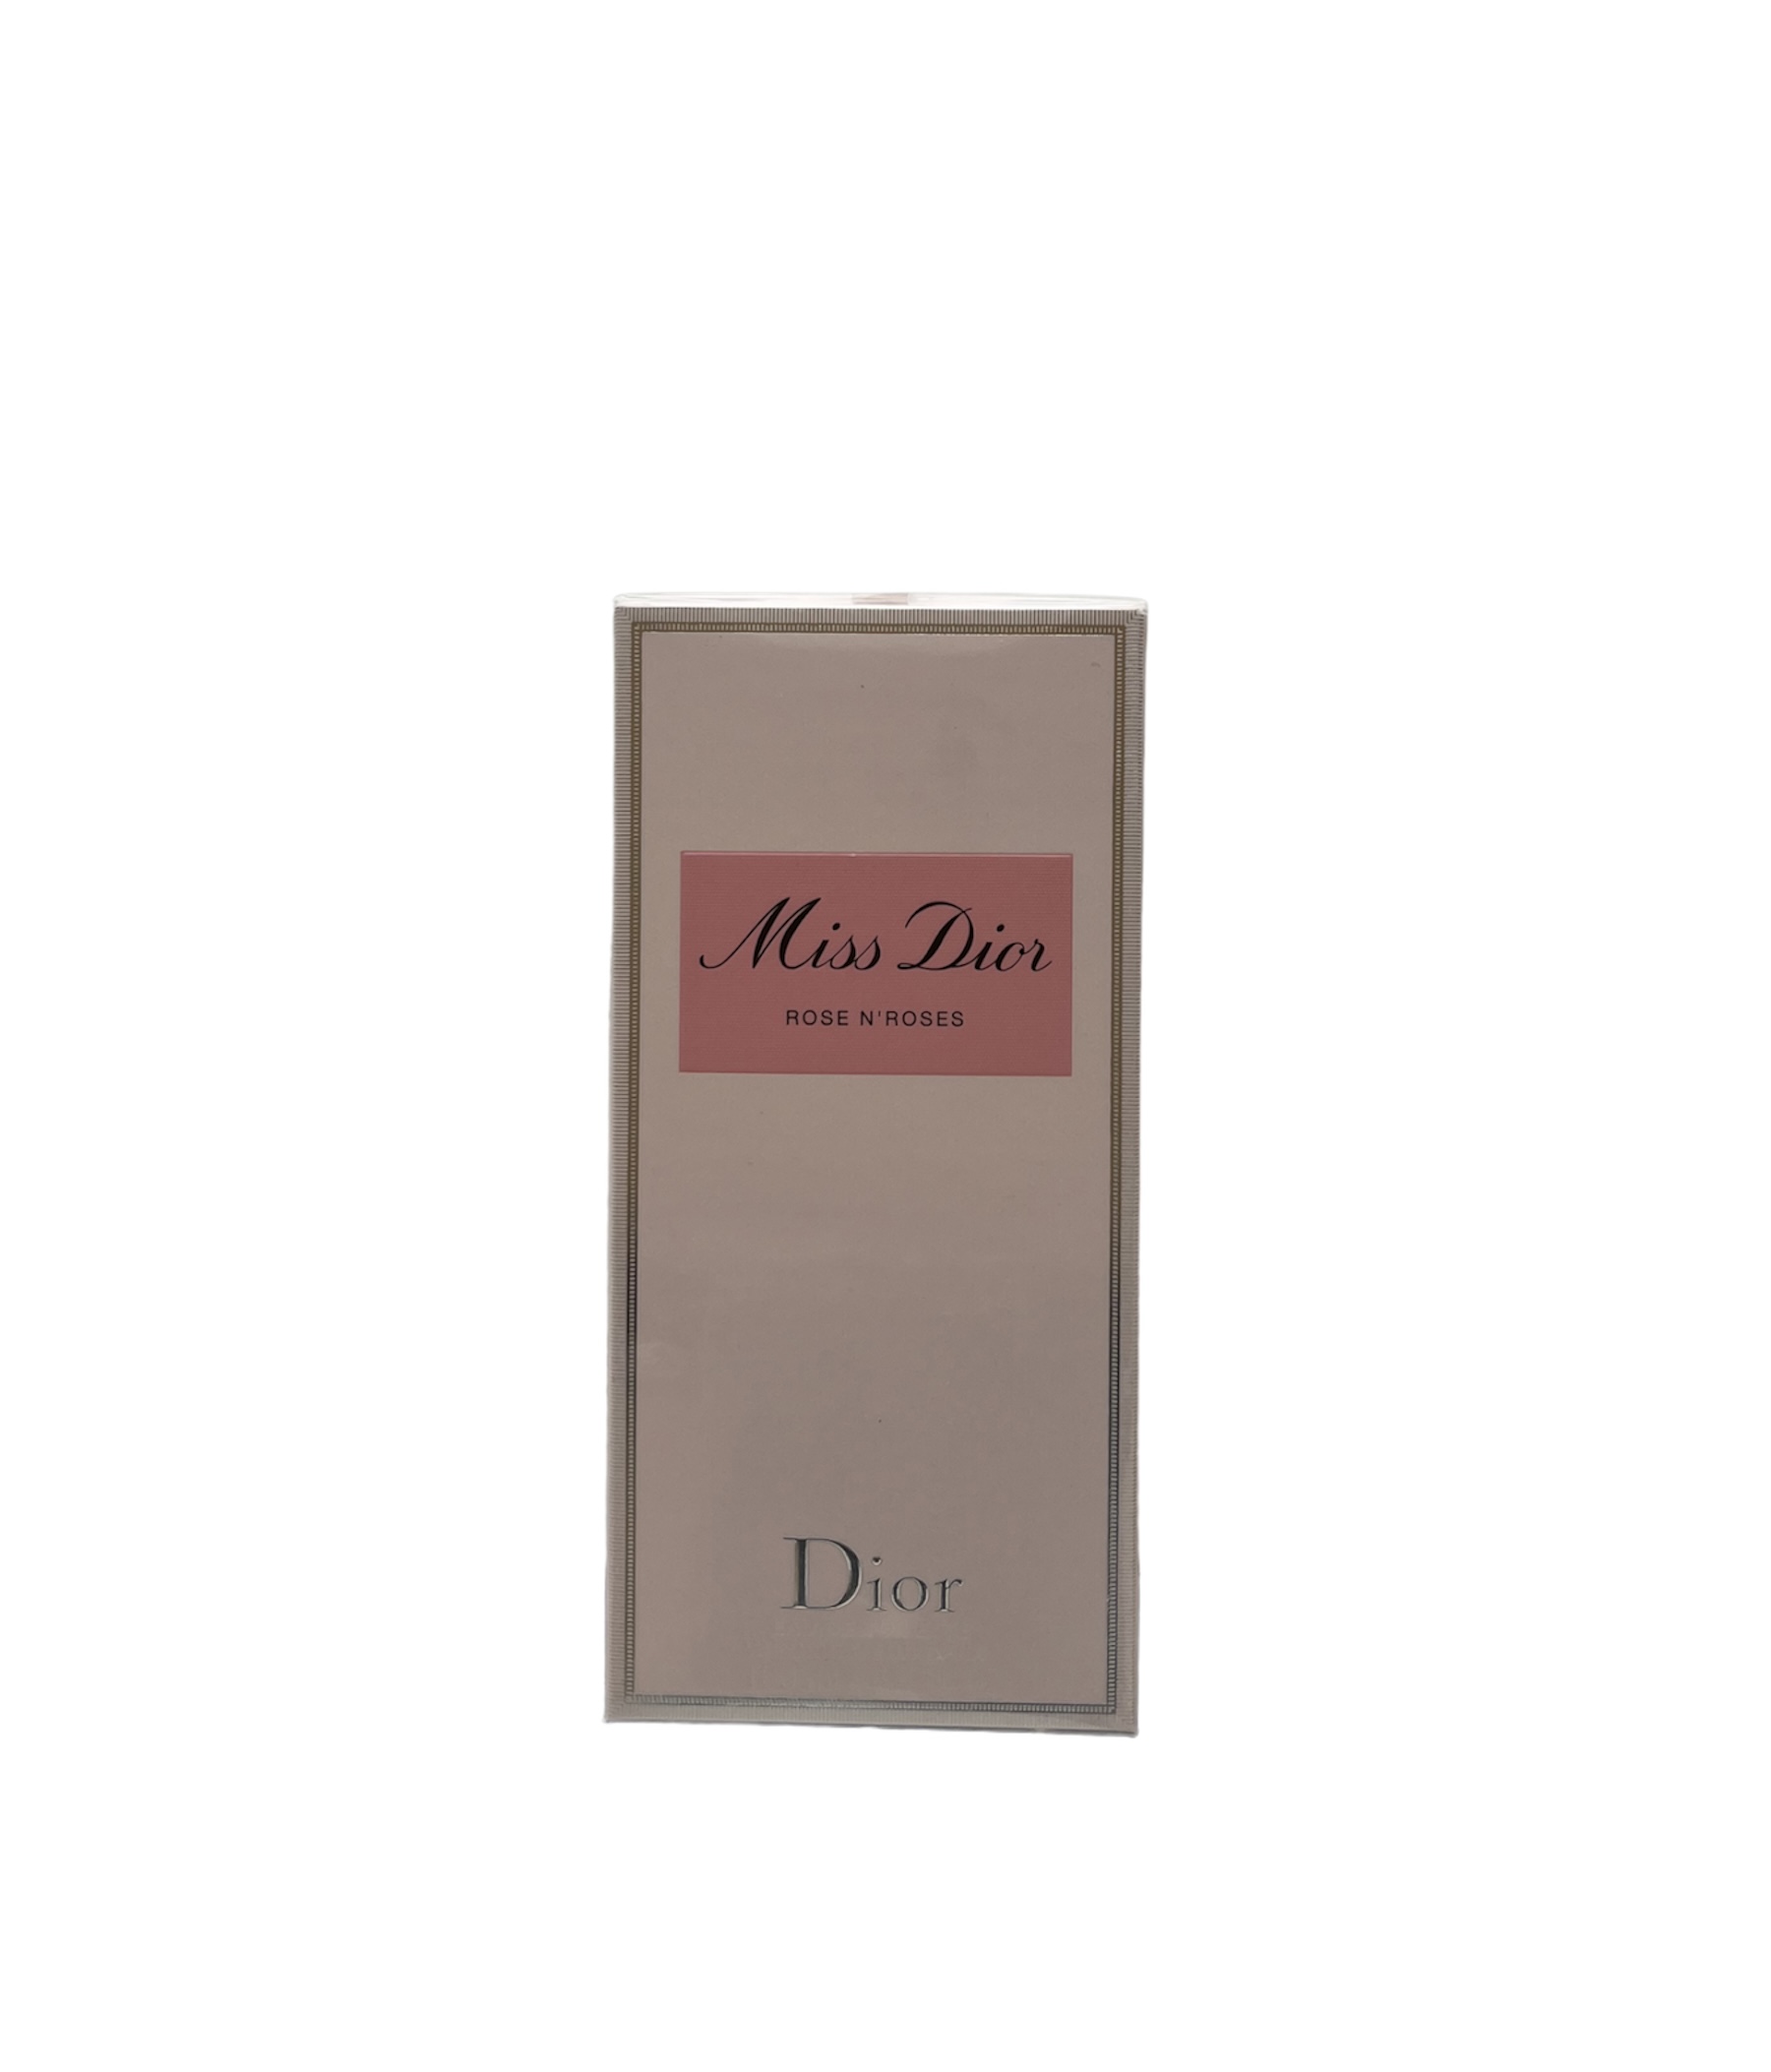 Dior - Miss Dior Rose N'Roses Eau de Toilette 50ml